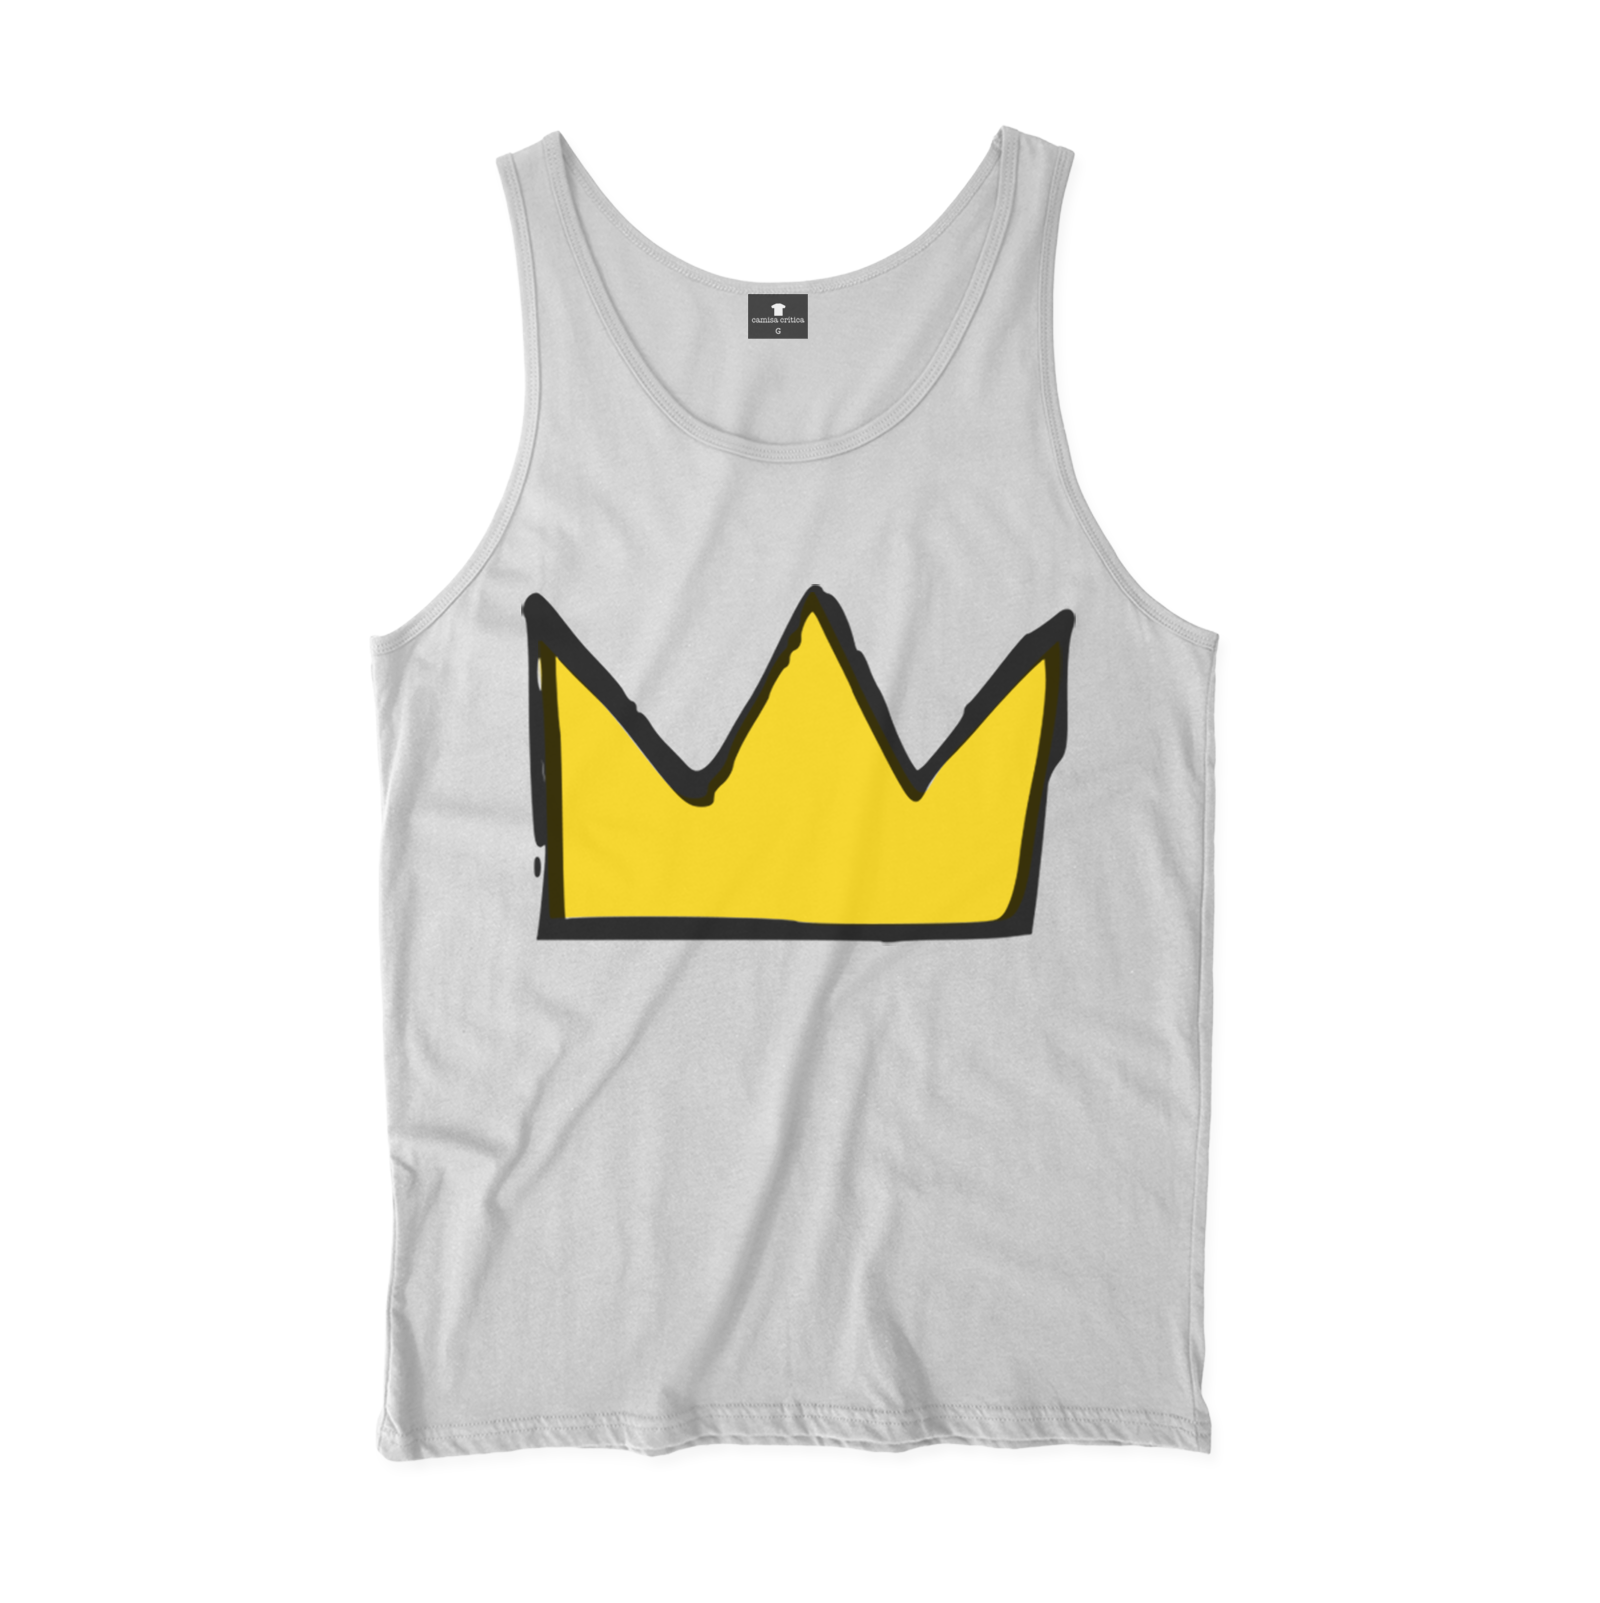 Camiseta Regata. EIlustração de uma coroa ao estilo construído por Jean-Michel Basquiat.